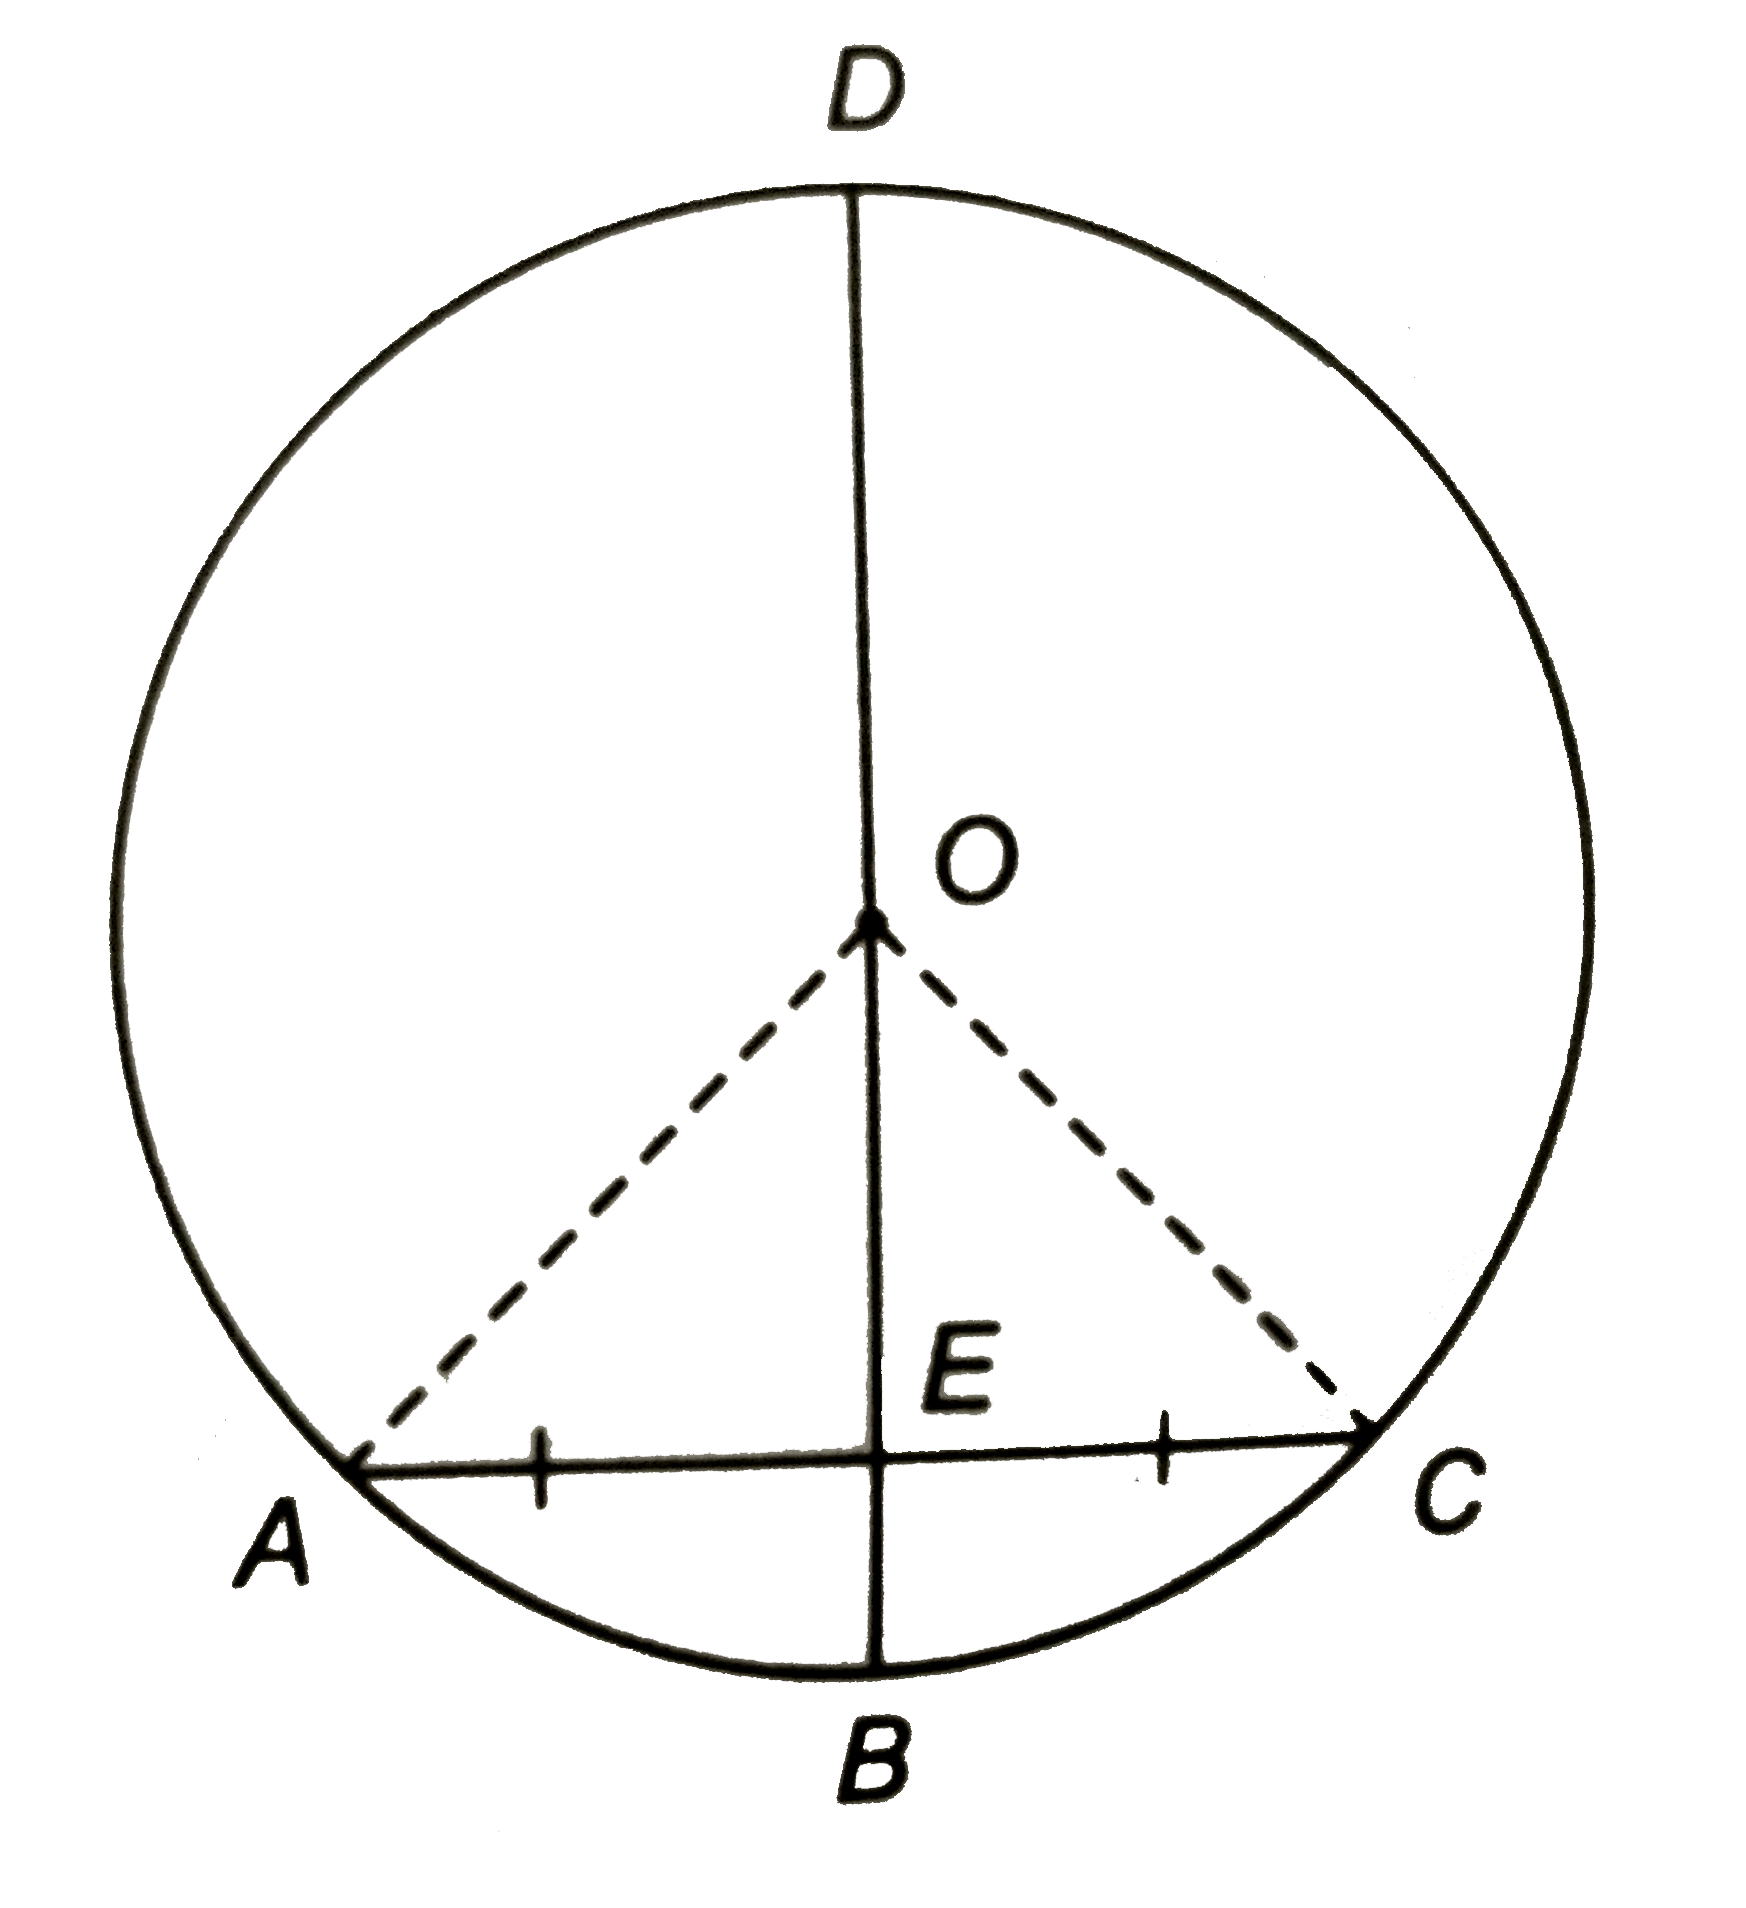 संलग्न चित्र में BD वृत्त का व्यास है जो जीवा AC को E बिन्दु पर समद्विभाजित करता है | यदि AC = 8 सेमी, BE = 2 सेमी, तो वृत्त की त्रिज्या ज्ञात कीजिए |